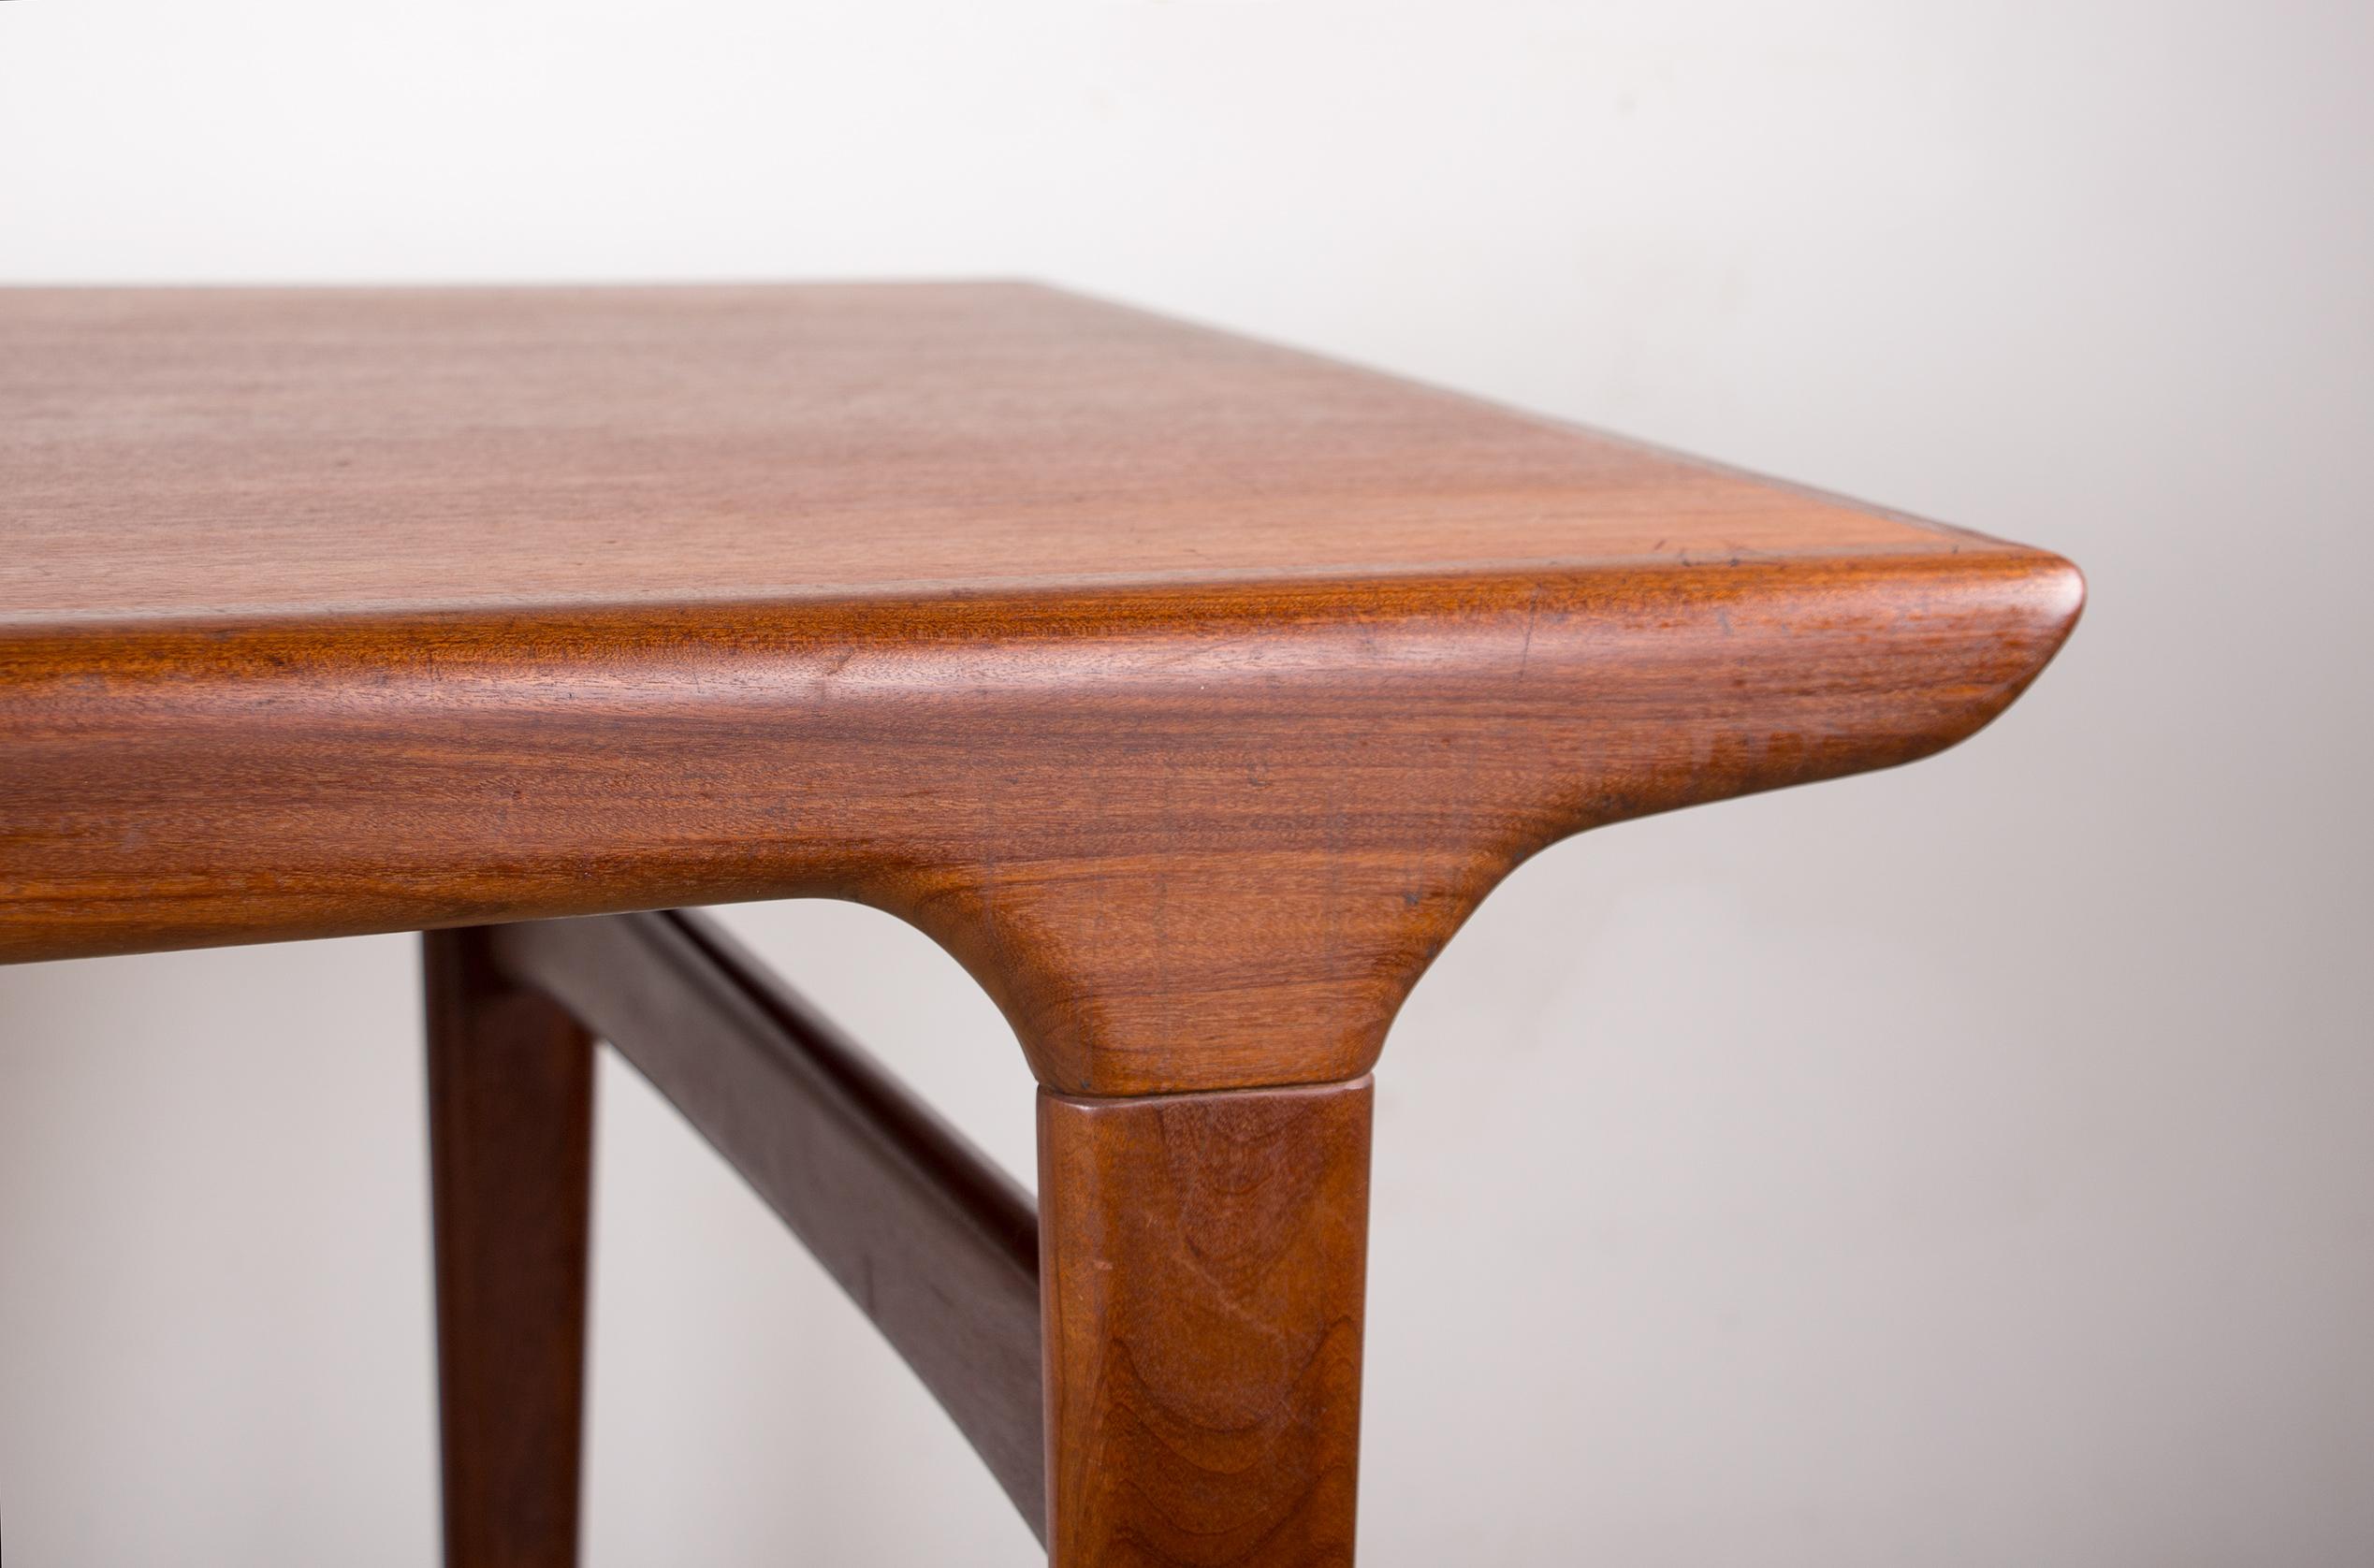 Skandinavischer Esszimmertisch, mit einer großen Verlängerung (72 cm) an einer Seite, die elegant unter den Tisch passt. Ein ausgeklügeltes Gegengewichtssystem unter dem Tisch ermöglicht es Ihnen, die Vorteile der Verlängerung ohne zusätzliche Beine